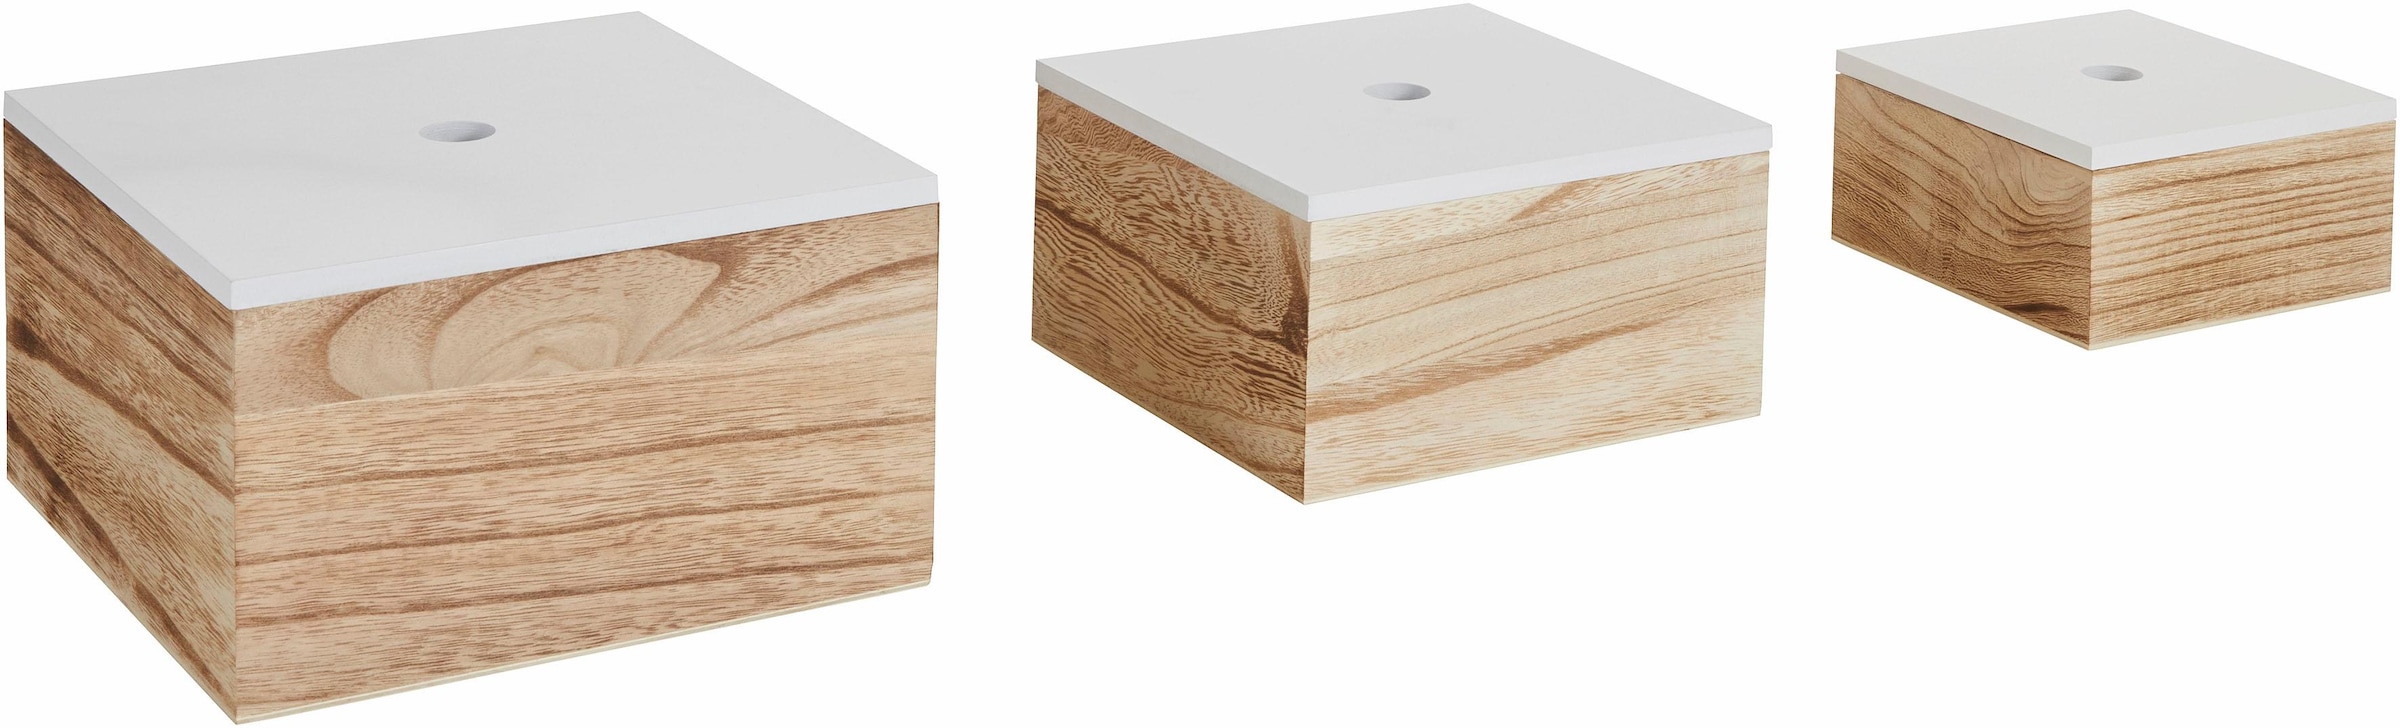 Aufbewahrungsbox, 3er Set, Holz, weiss/natur